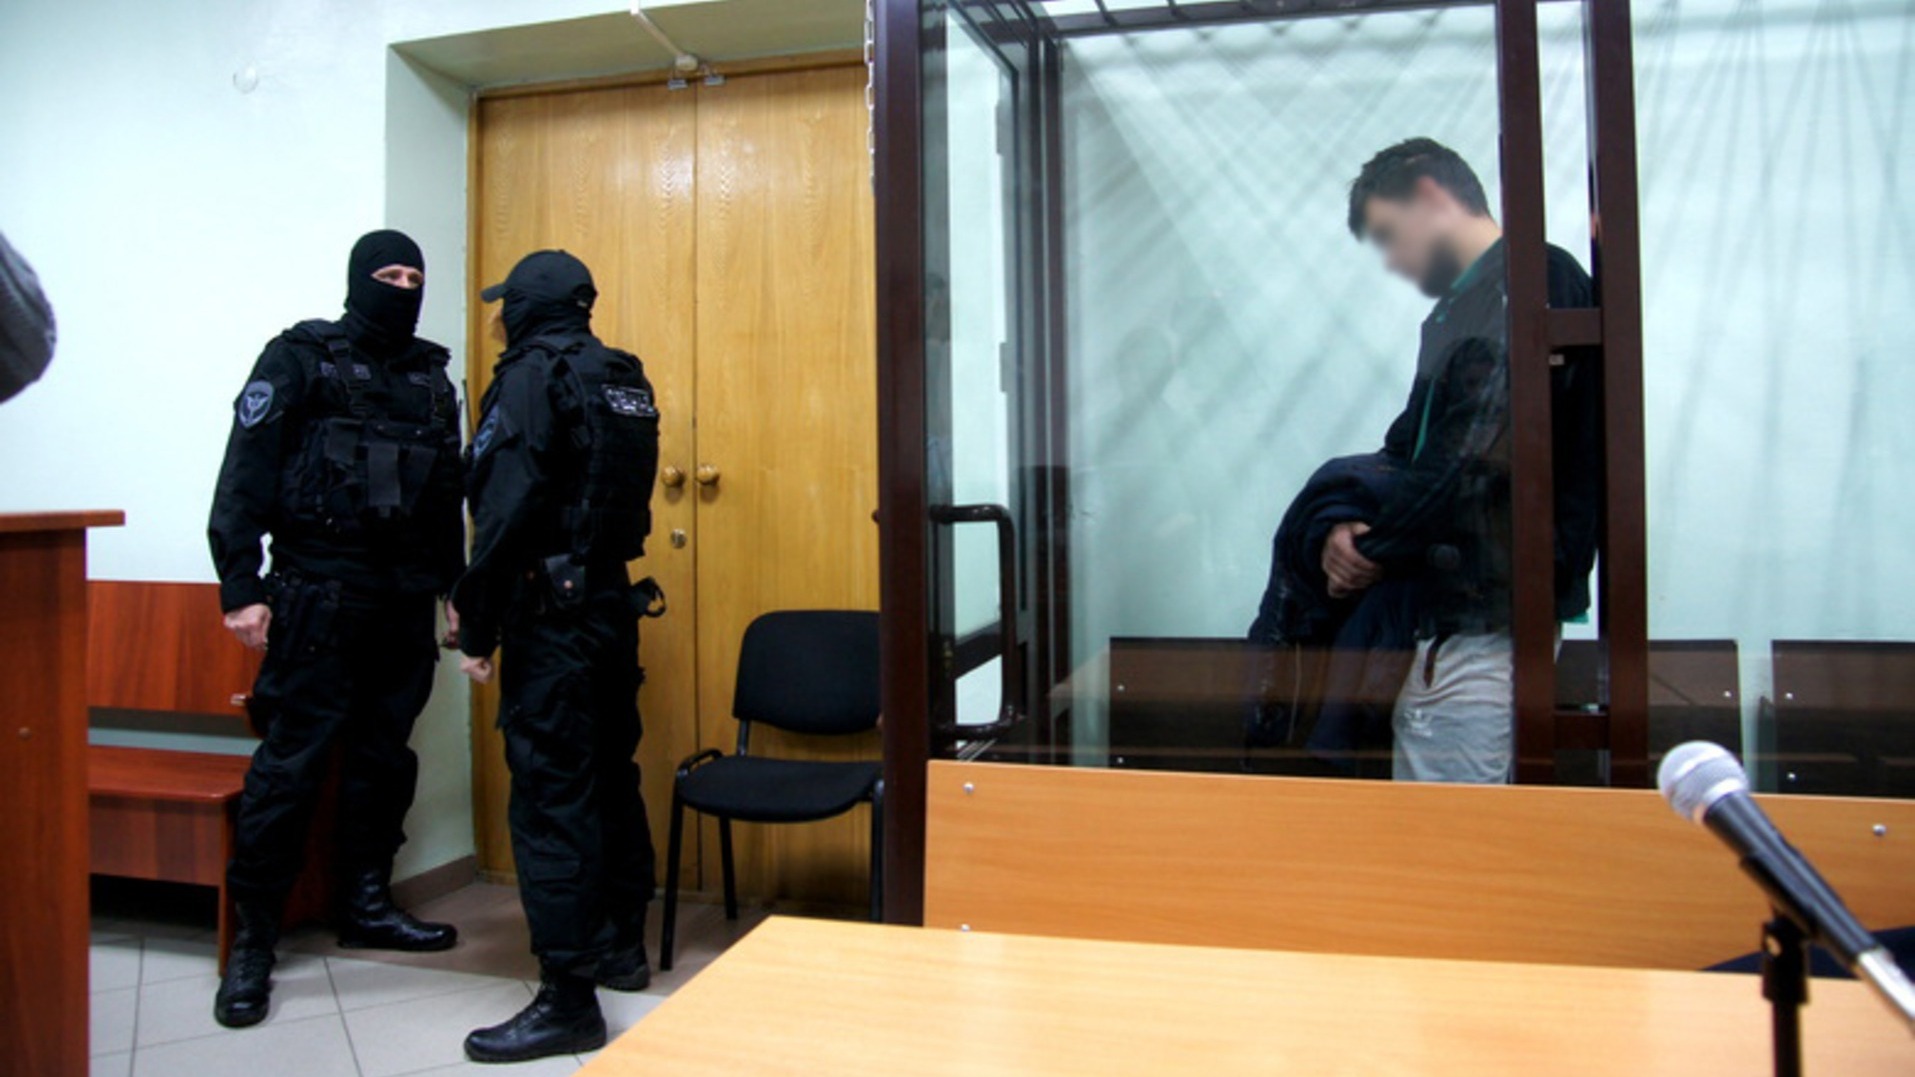 Выяснились подробности о самом громком задержании ФСБ и шпионаже в Приморье